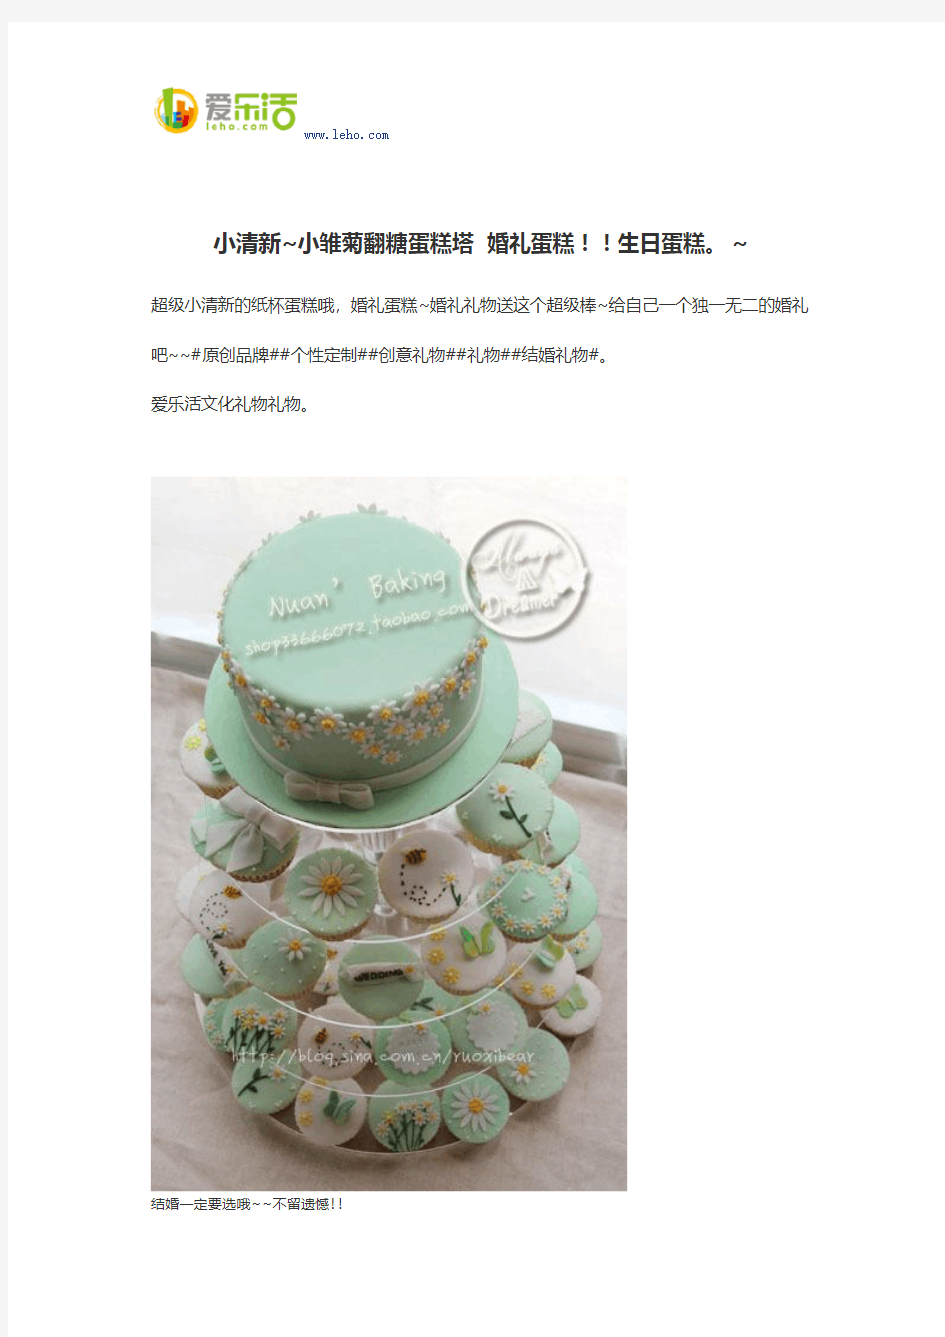 小清新~小雏菊翻糖蛋糕塔 婚礼蛋糕!!生日蛋糕。~